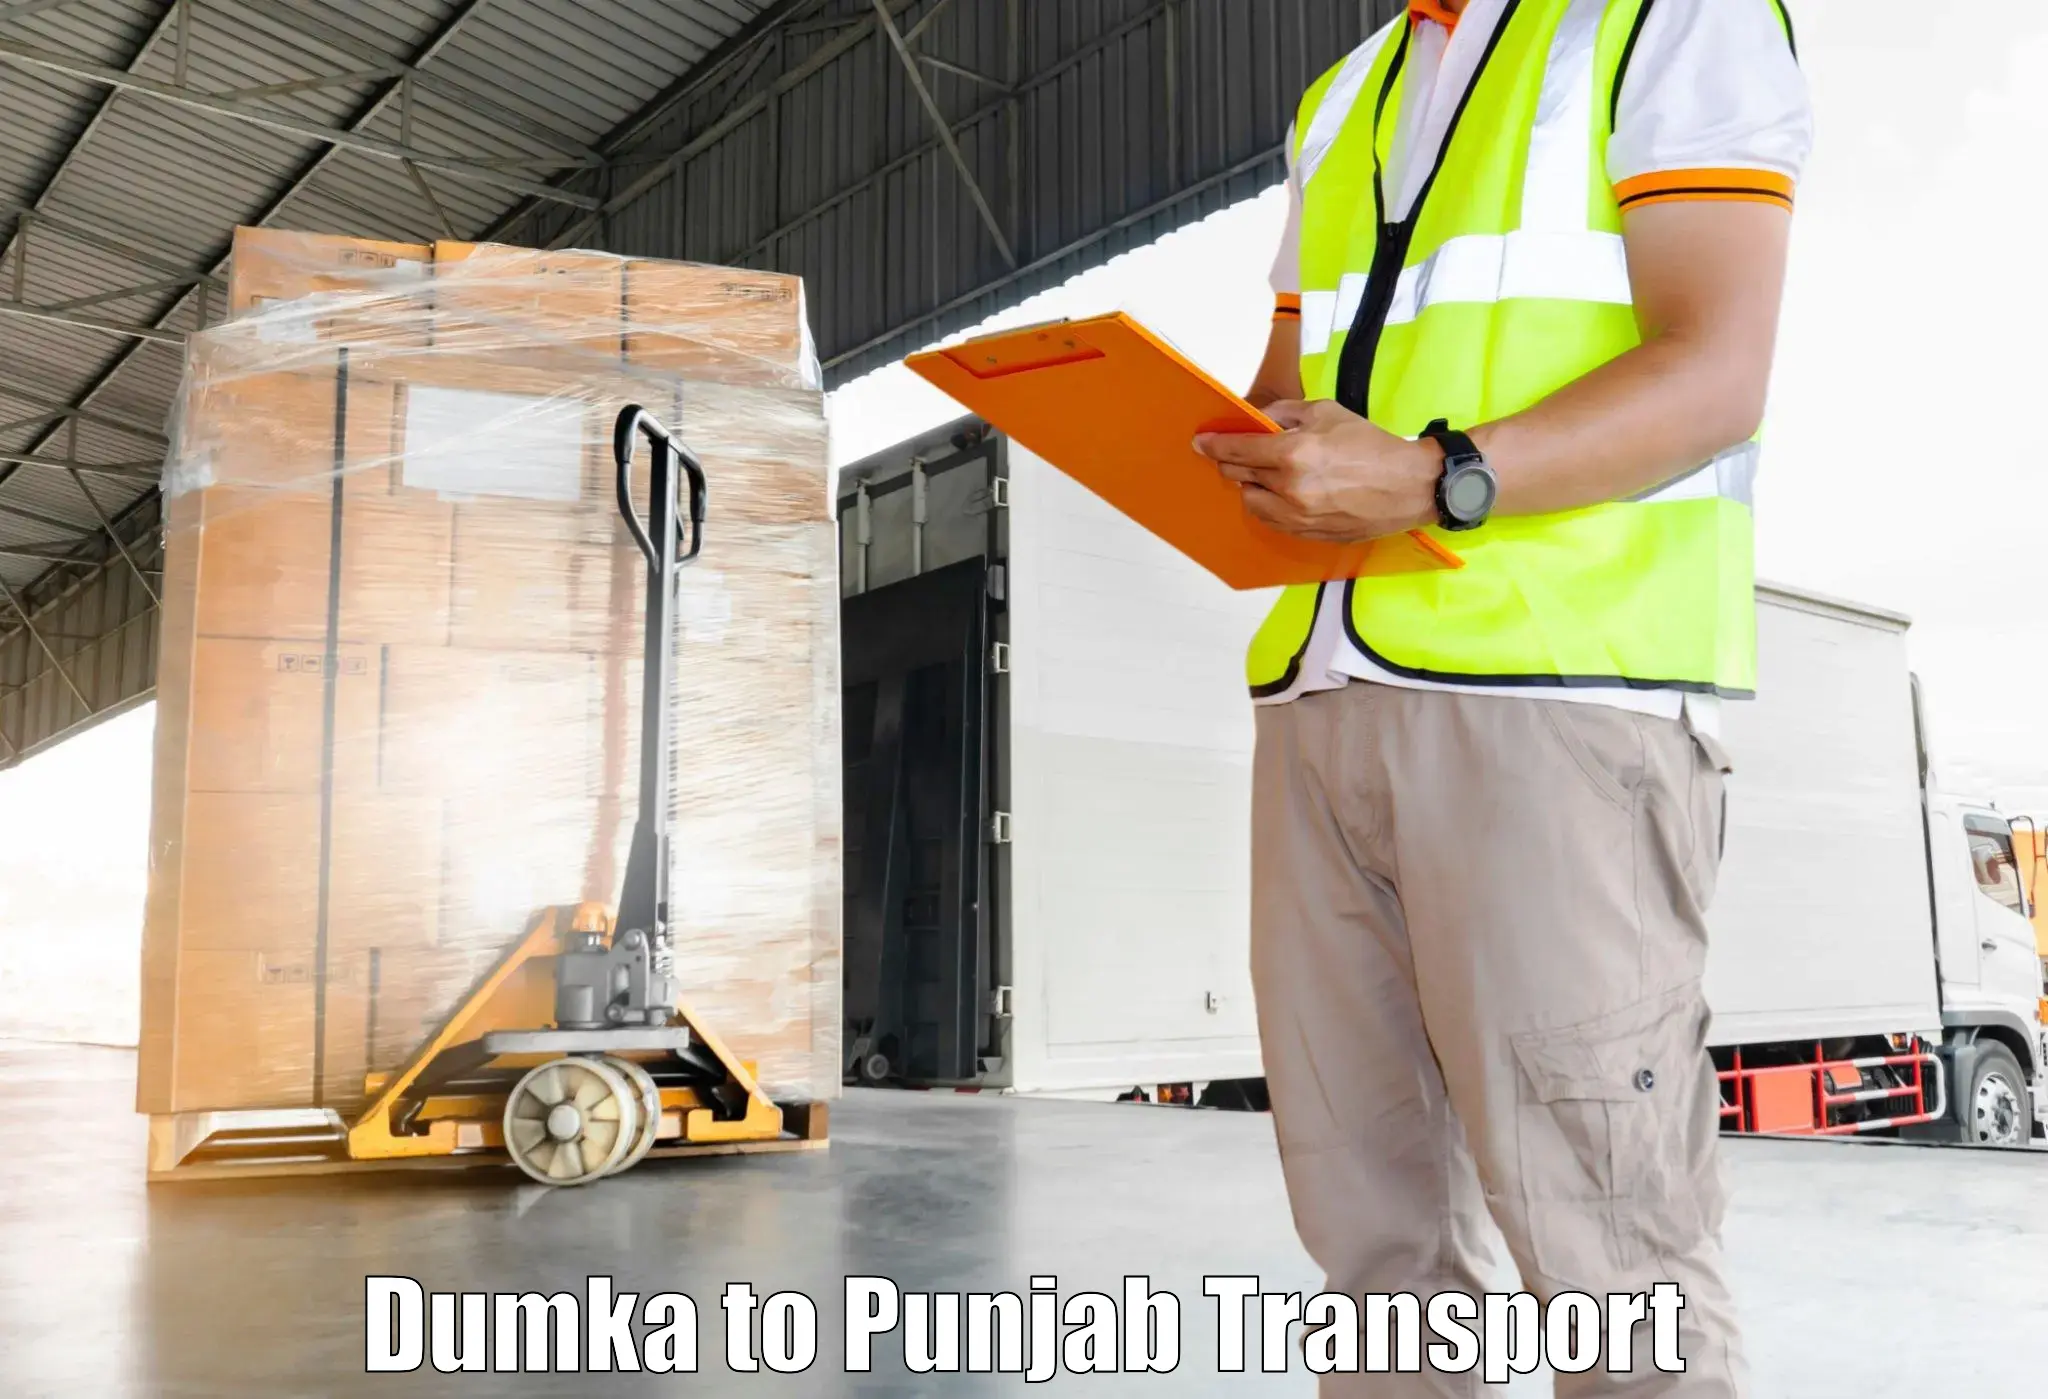 Part load transport service in India Dumka to Jalandhar